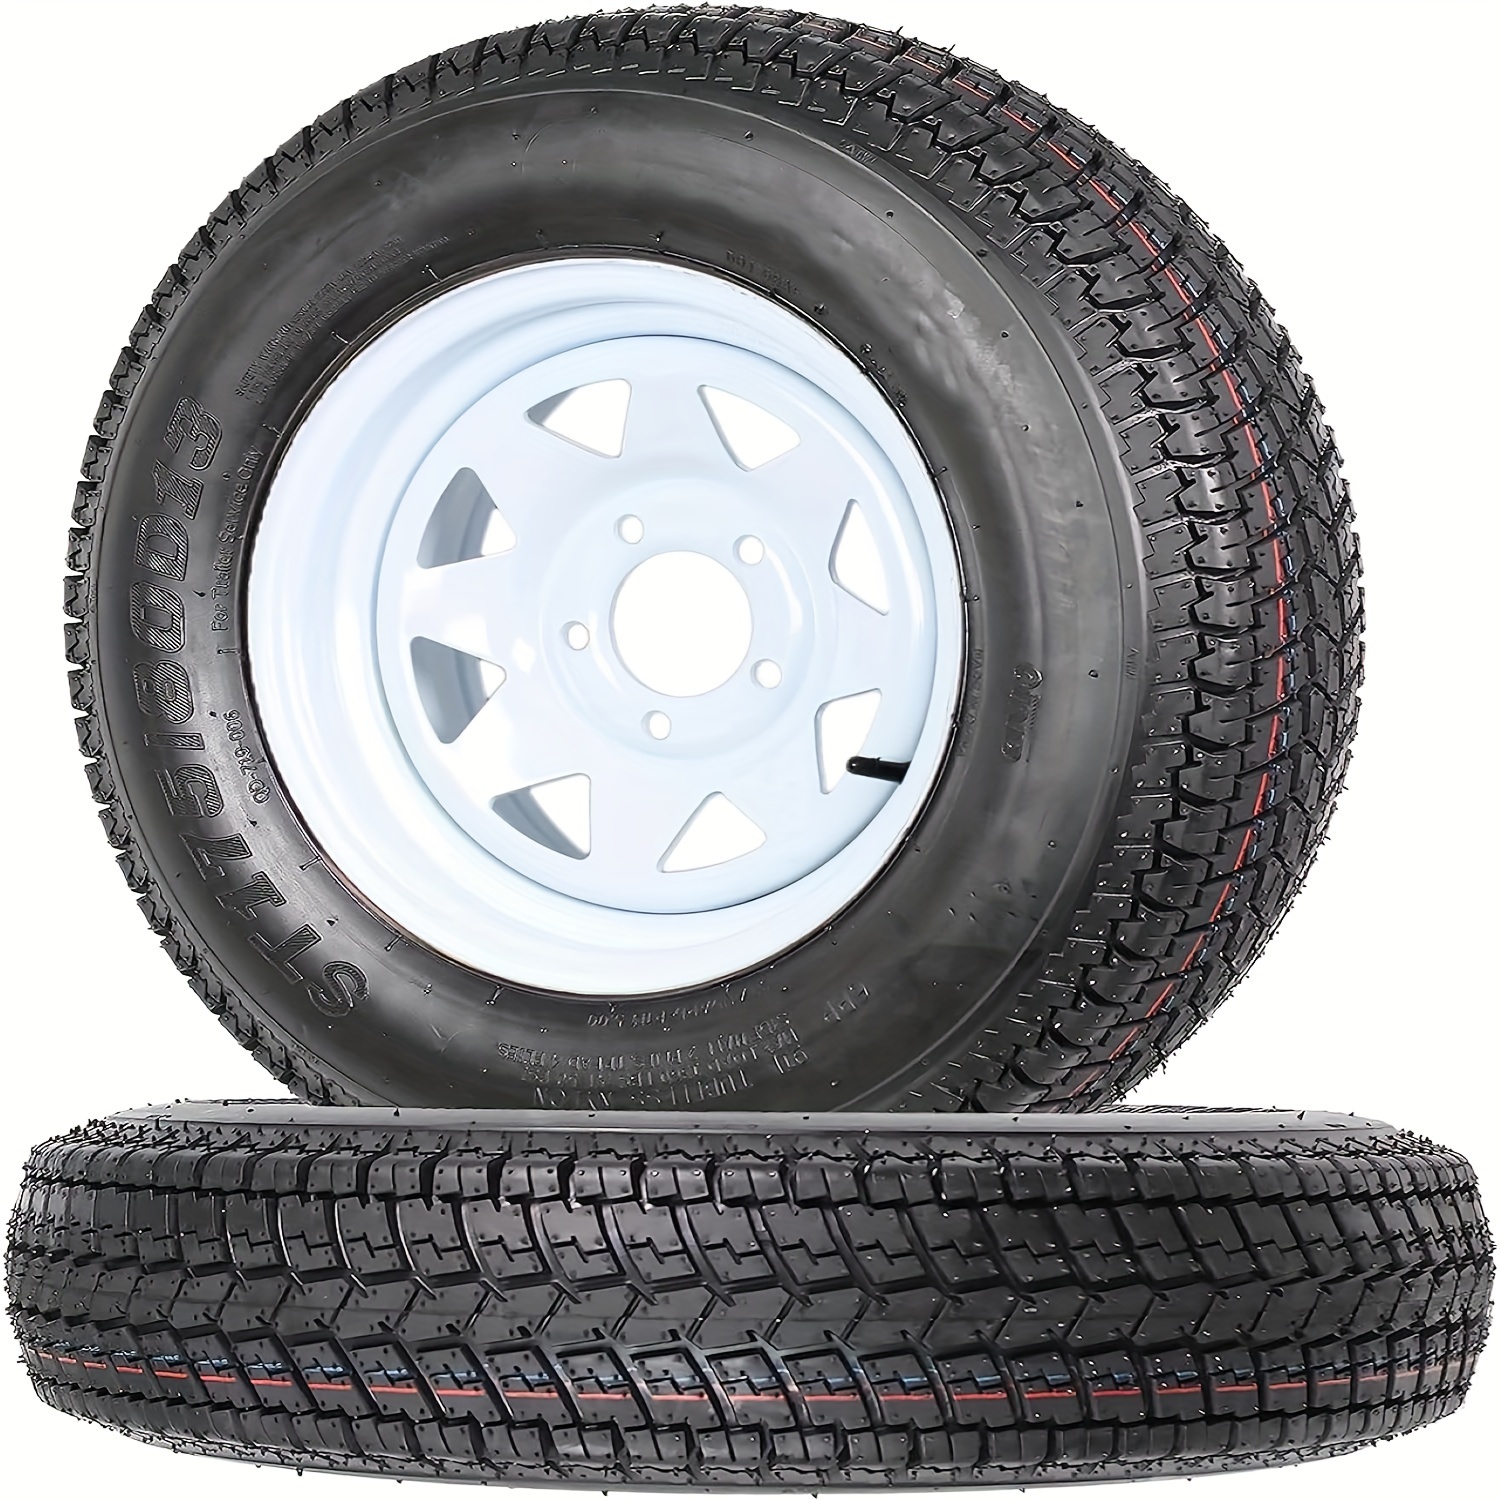 

Set Of 2 Trailer Tire St175 80d13, St175/80d13 Trailer Tires Rims 175 80 13 Tire 5 Lug White Spoke Wheel Load Range C, 6 Ply